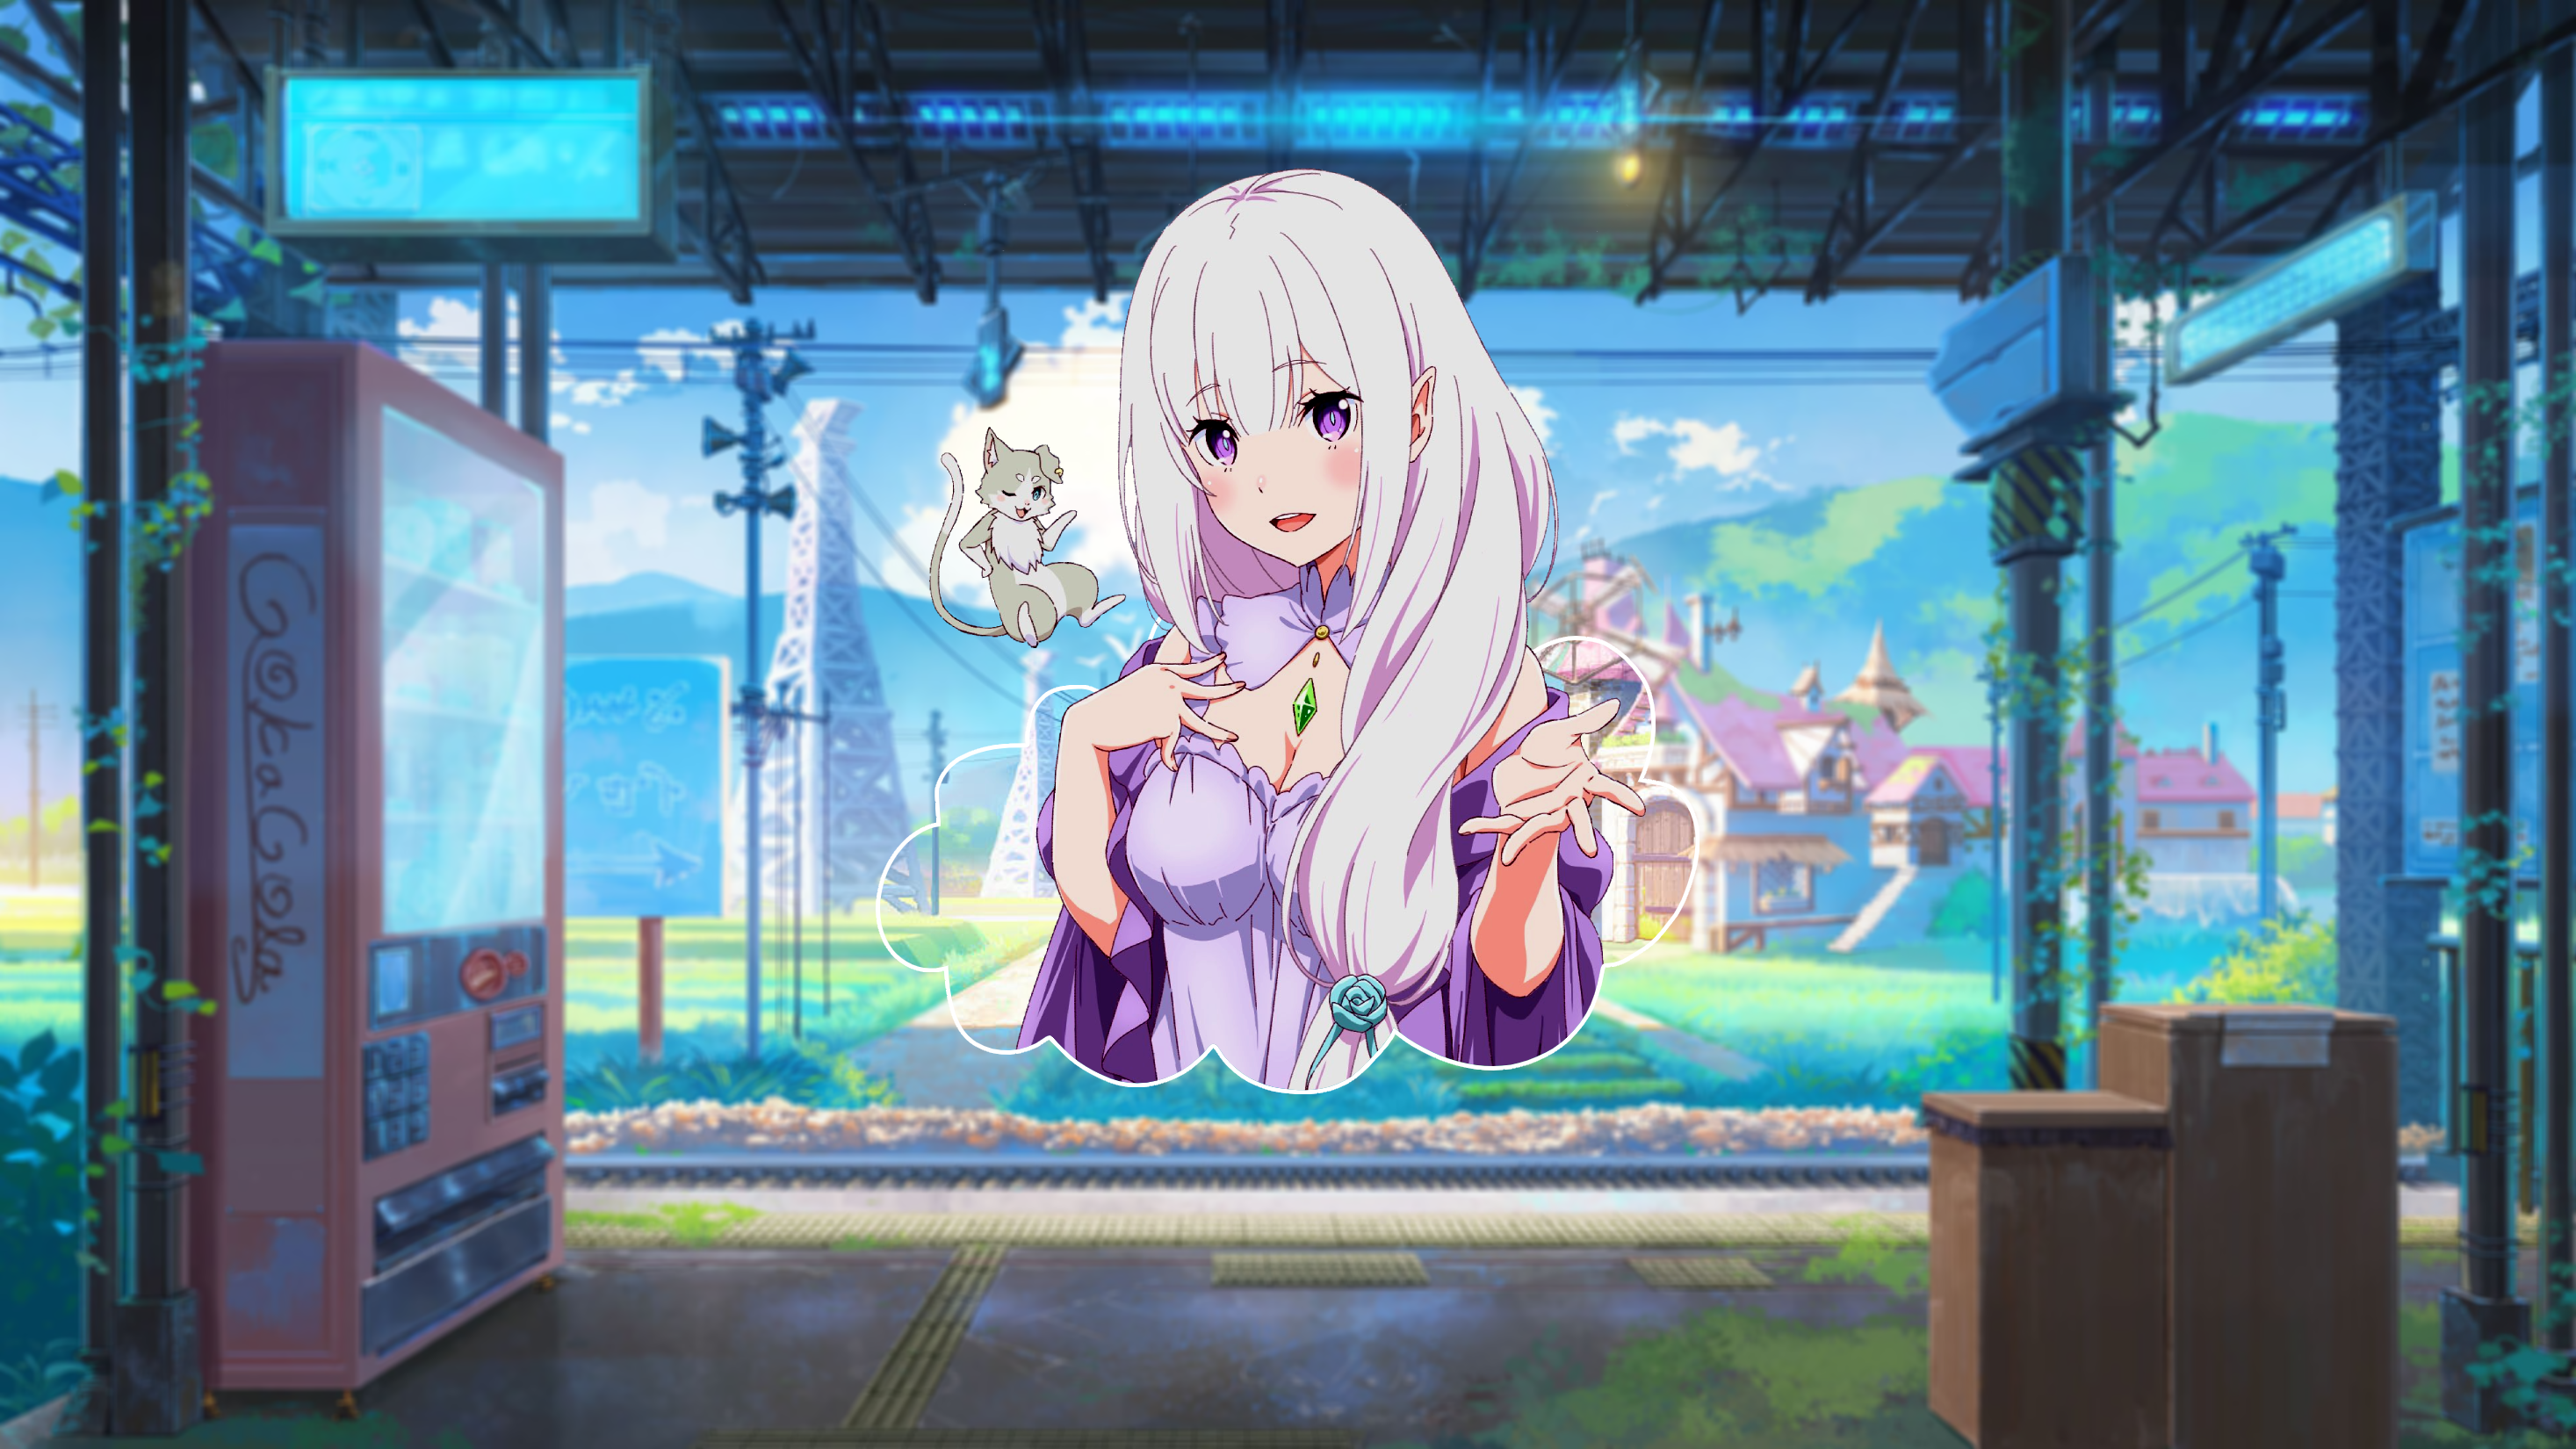 Emilia Re Zero Picture In Picture Digital Anime Girls 2933x1650